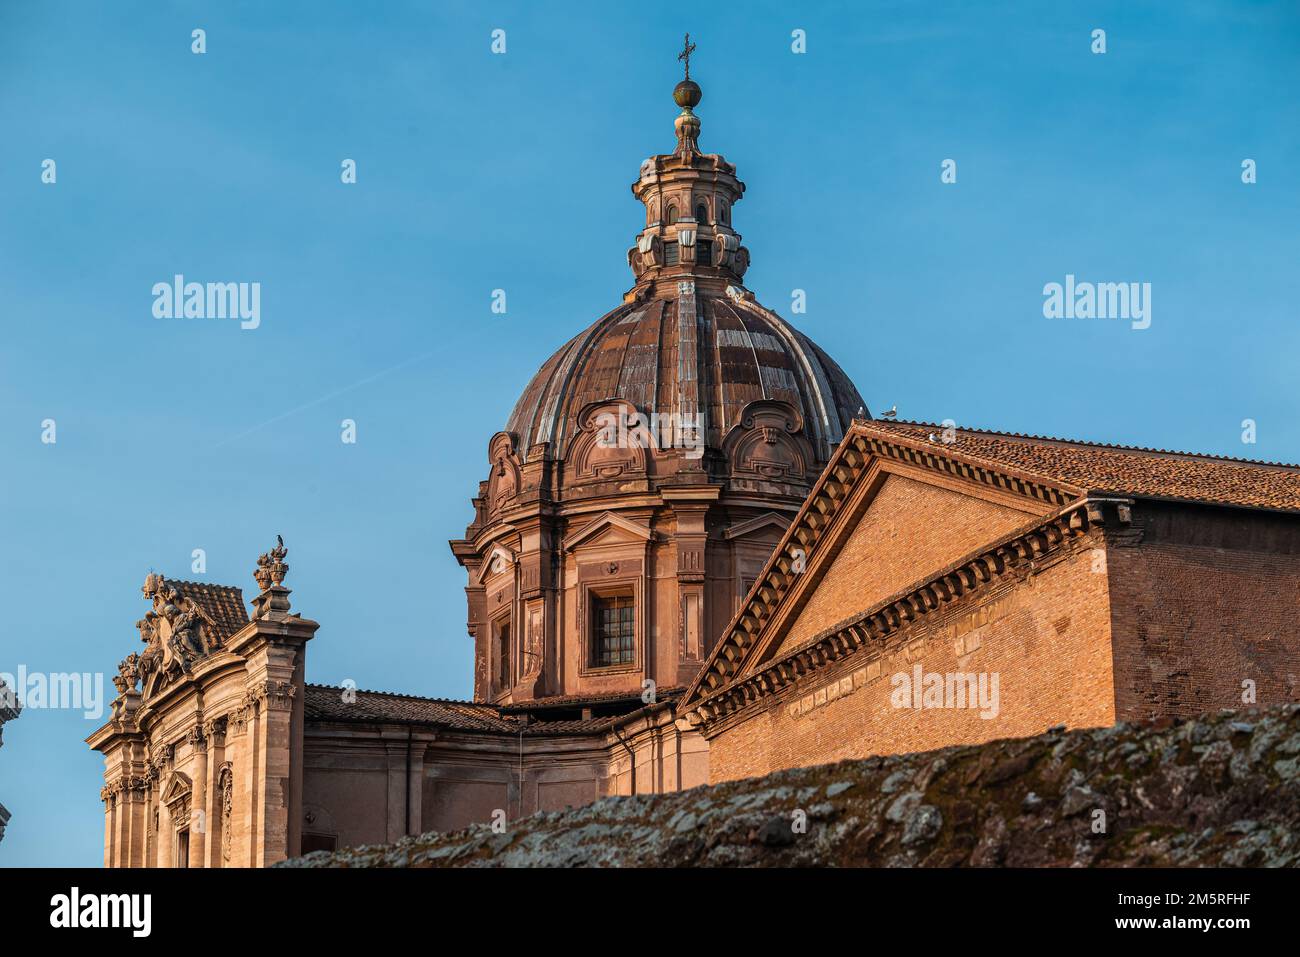 Paesaggio urbano - chiesa cattolica di san Luca e Martina di Roma antica, Italia, caratterizzata dalla sua cupola con il simbolo araldico di Barberini - ape. Foto Stock